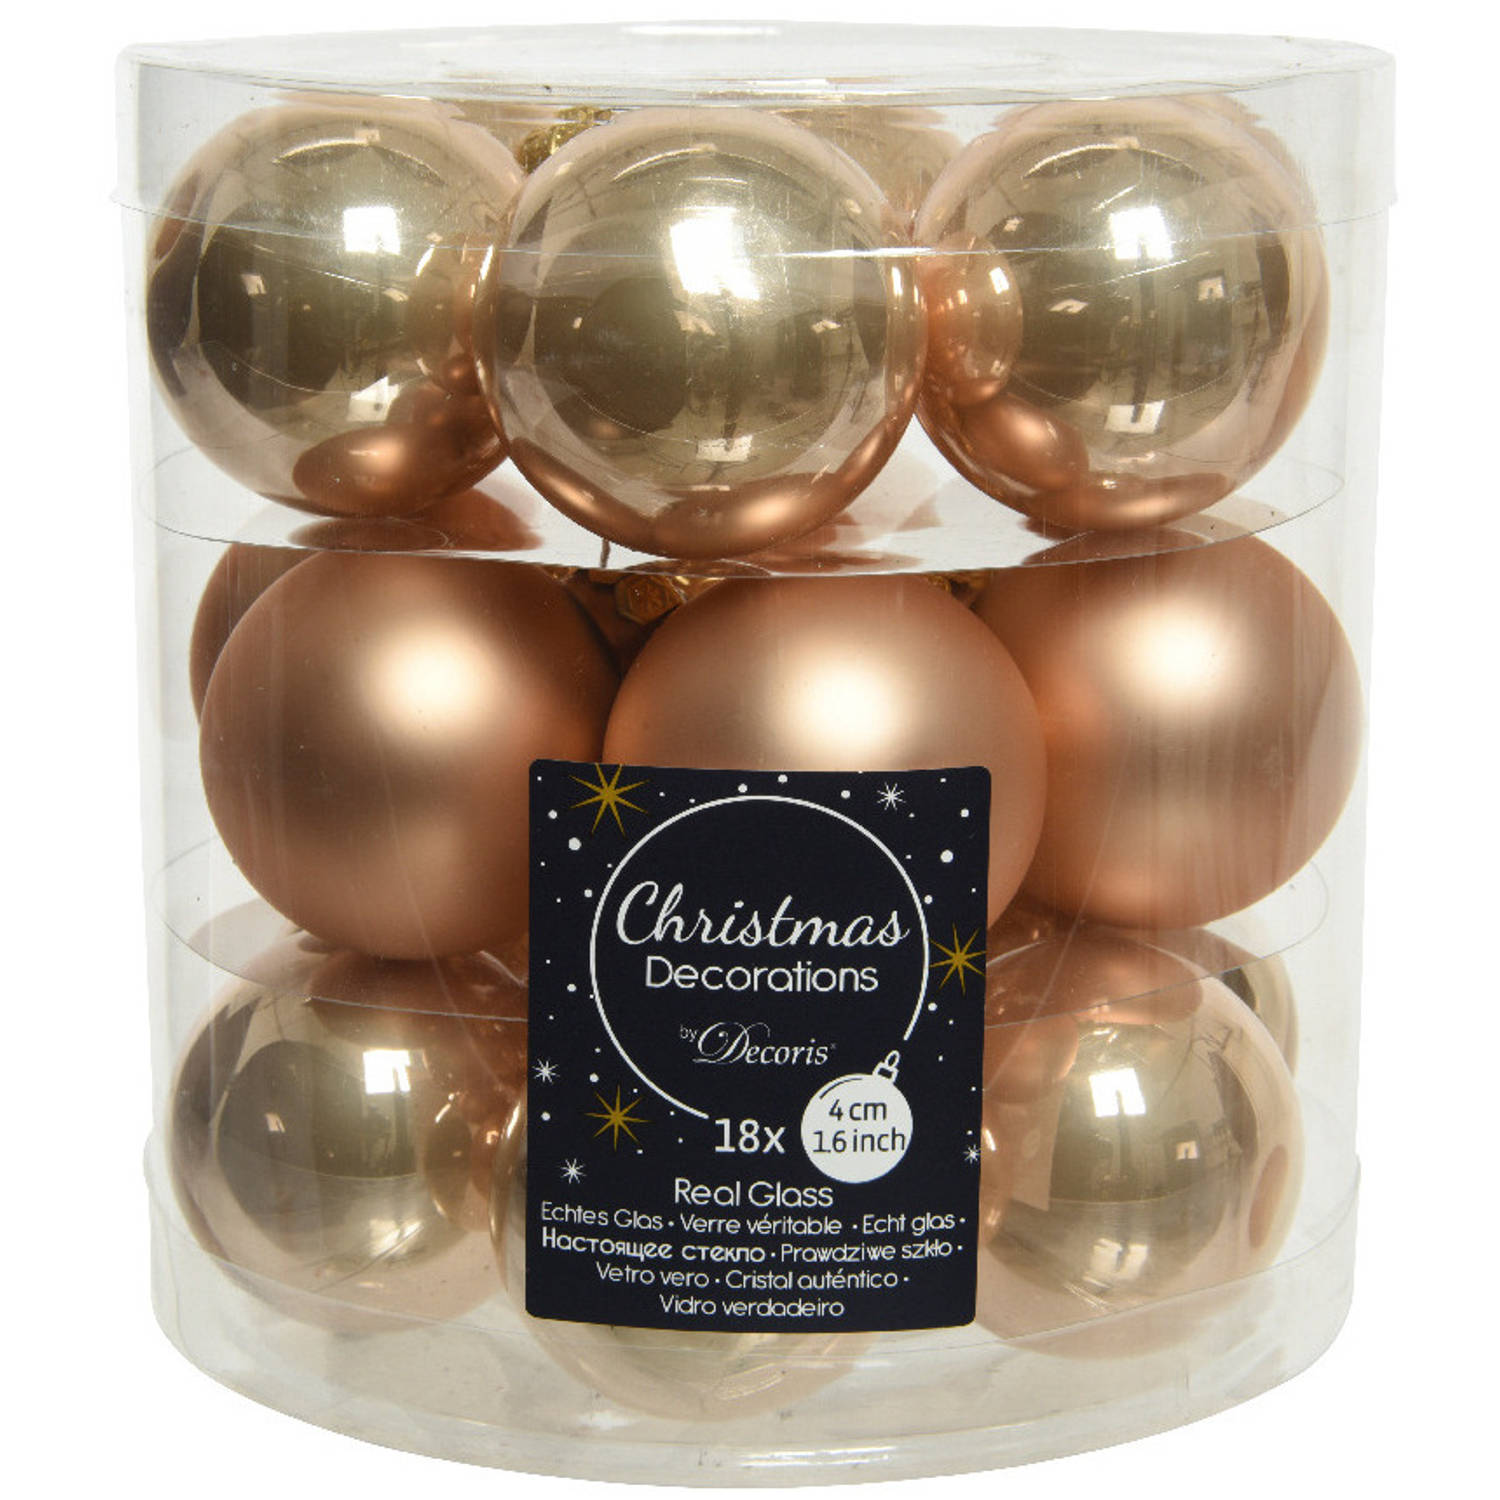 18x stuks kleine kerstballen toffee bruin van glas 4 cm - mat/glans - Kerstboomversiering